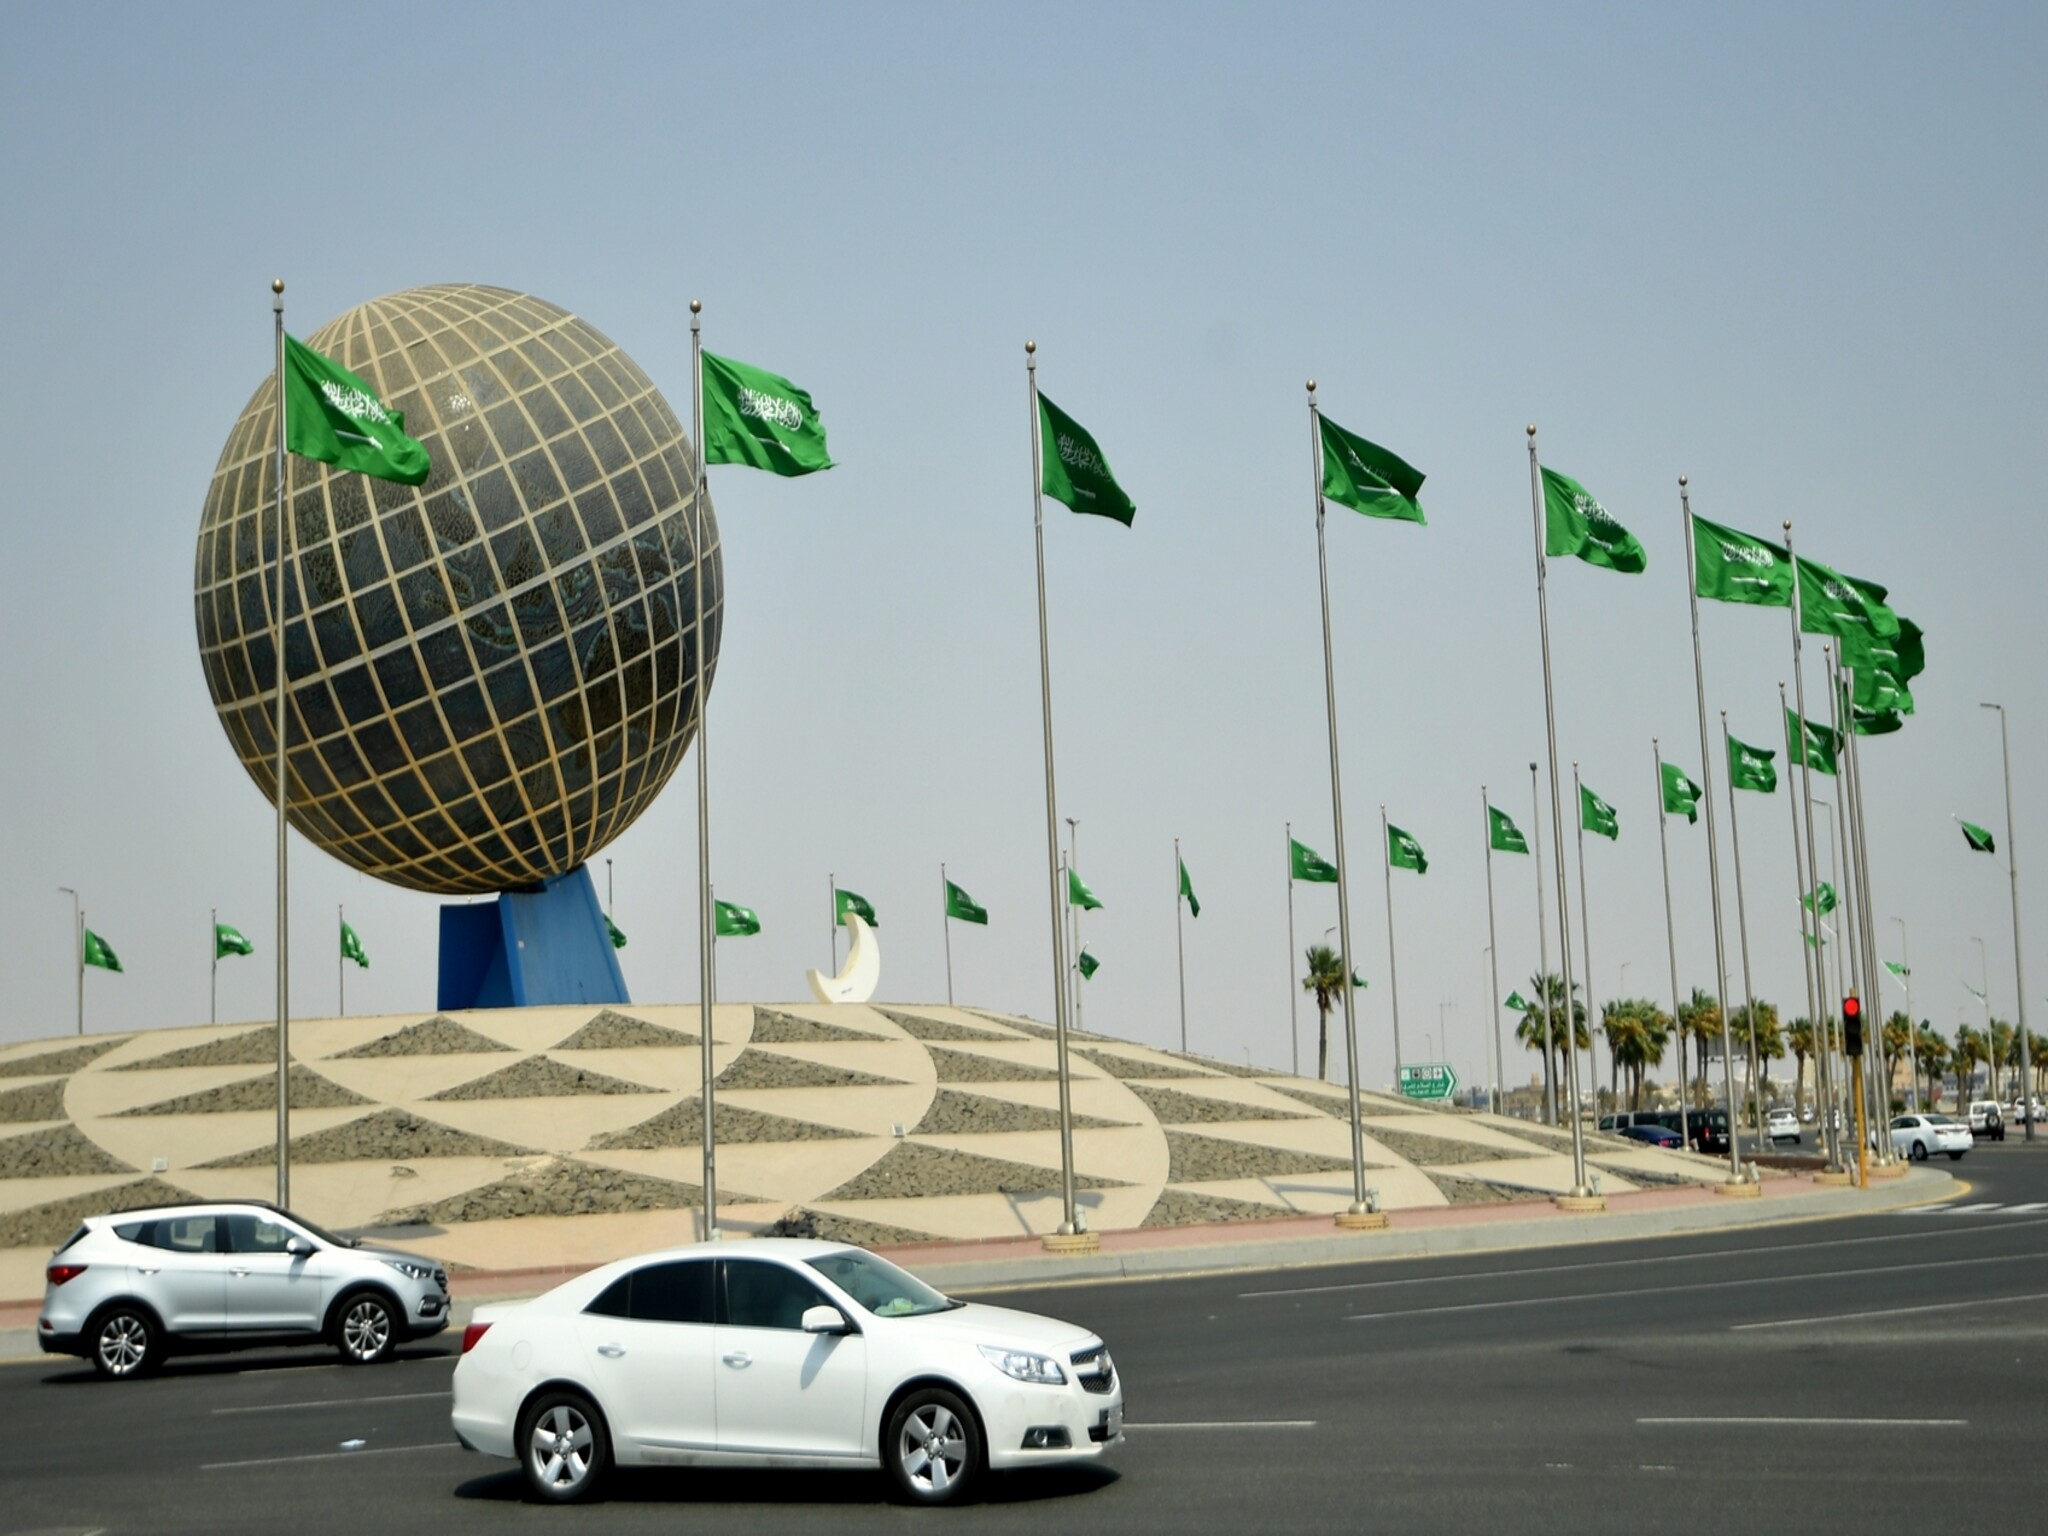 السعودية تعلن استحداث استقدام 10 مهن جديدة عبر منصة مساند